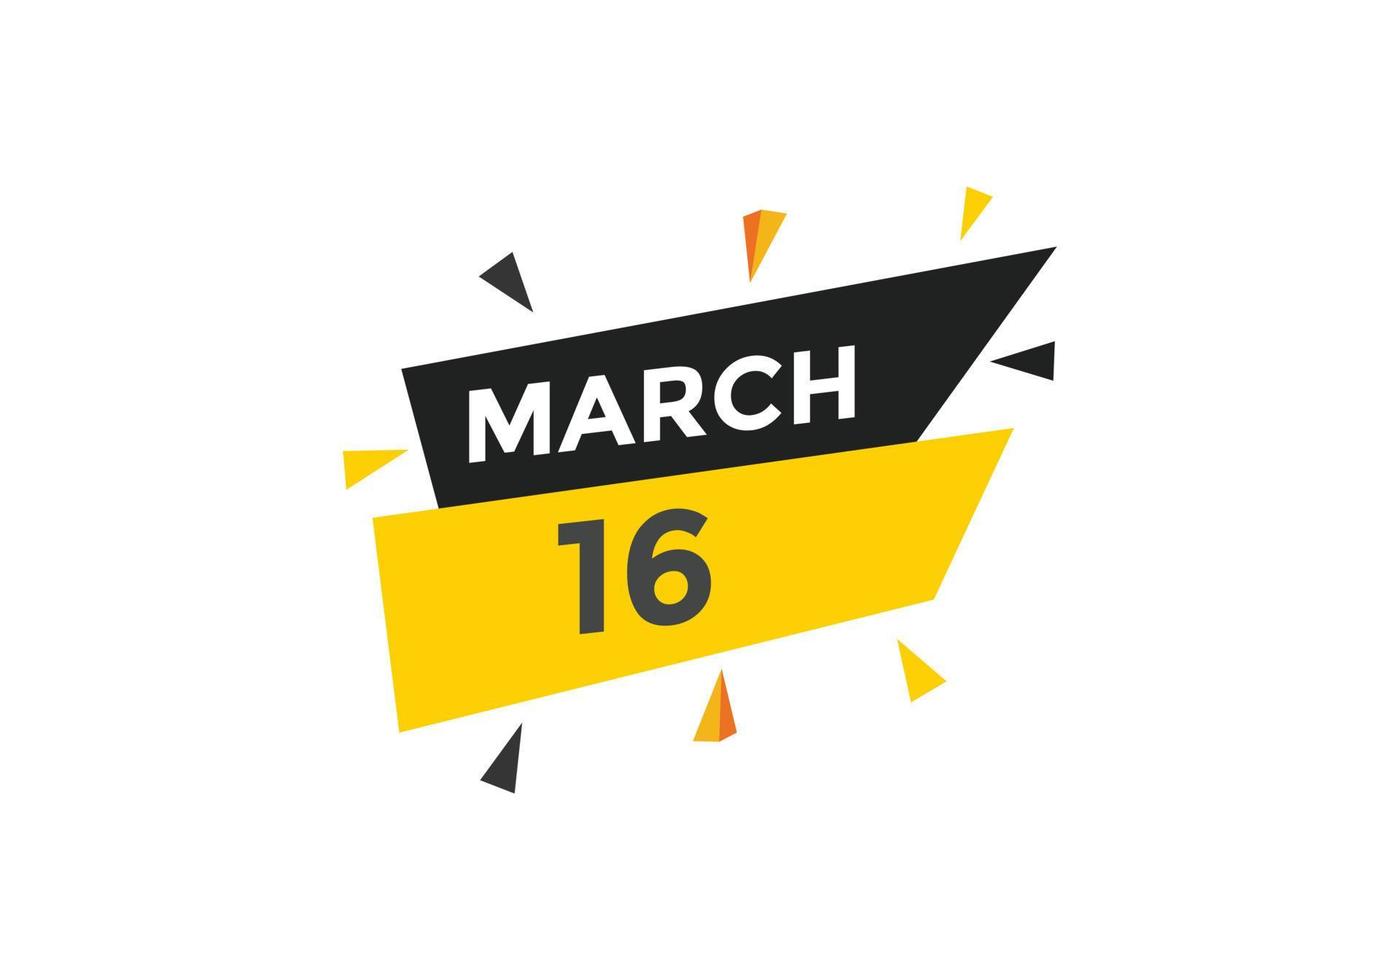 Recordatorio del calendario del 16 de marzo. Plantilla de icono de calendario diario del 16 de marzo. plantilla de diseño de icono de calendario 16 de marzo. ilustración vectorial vector